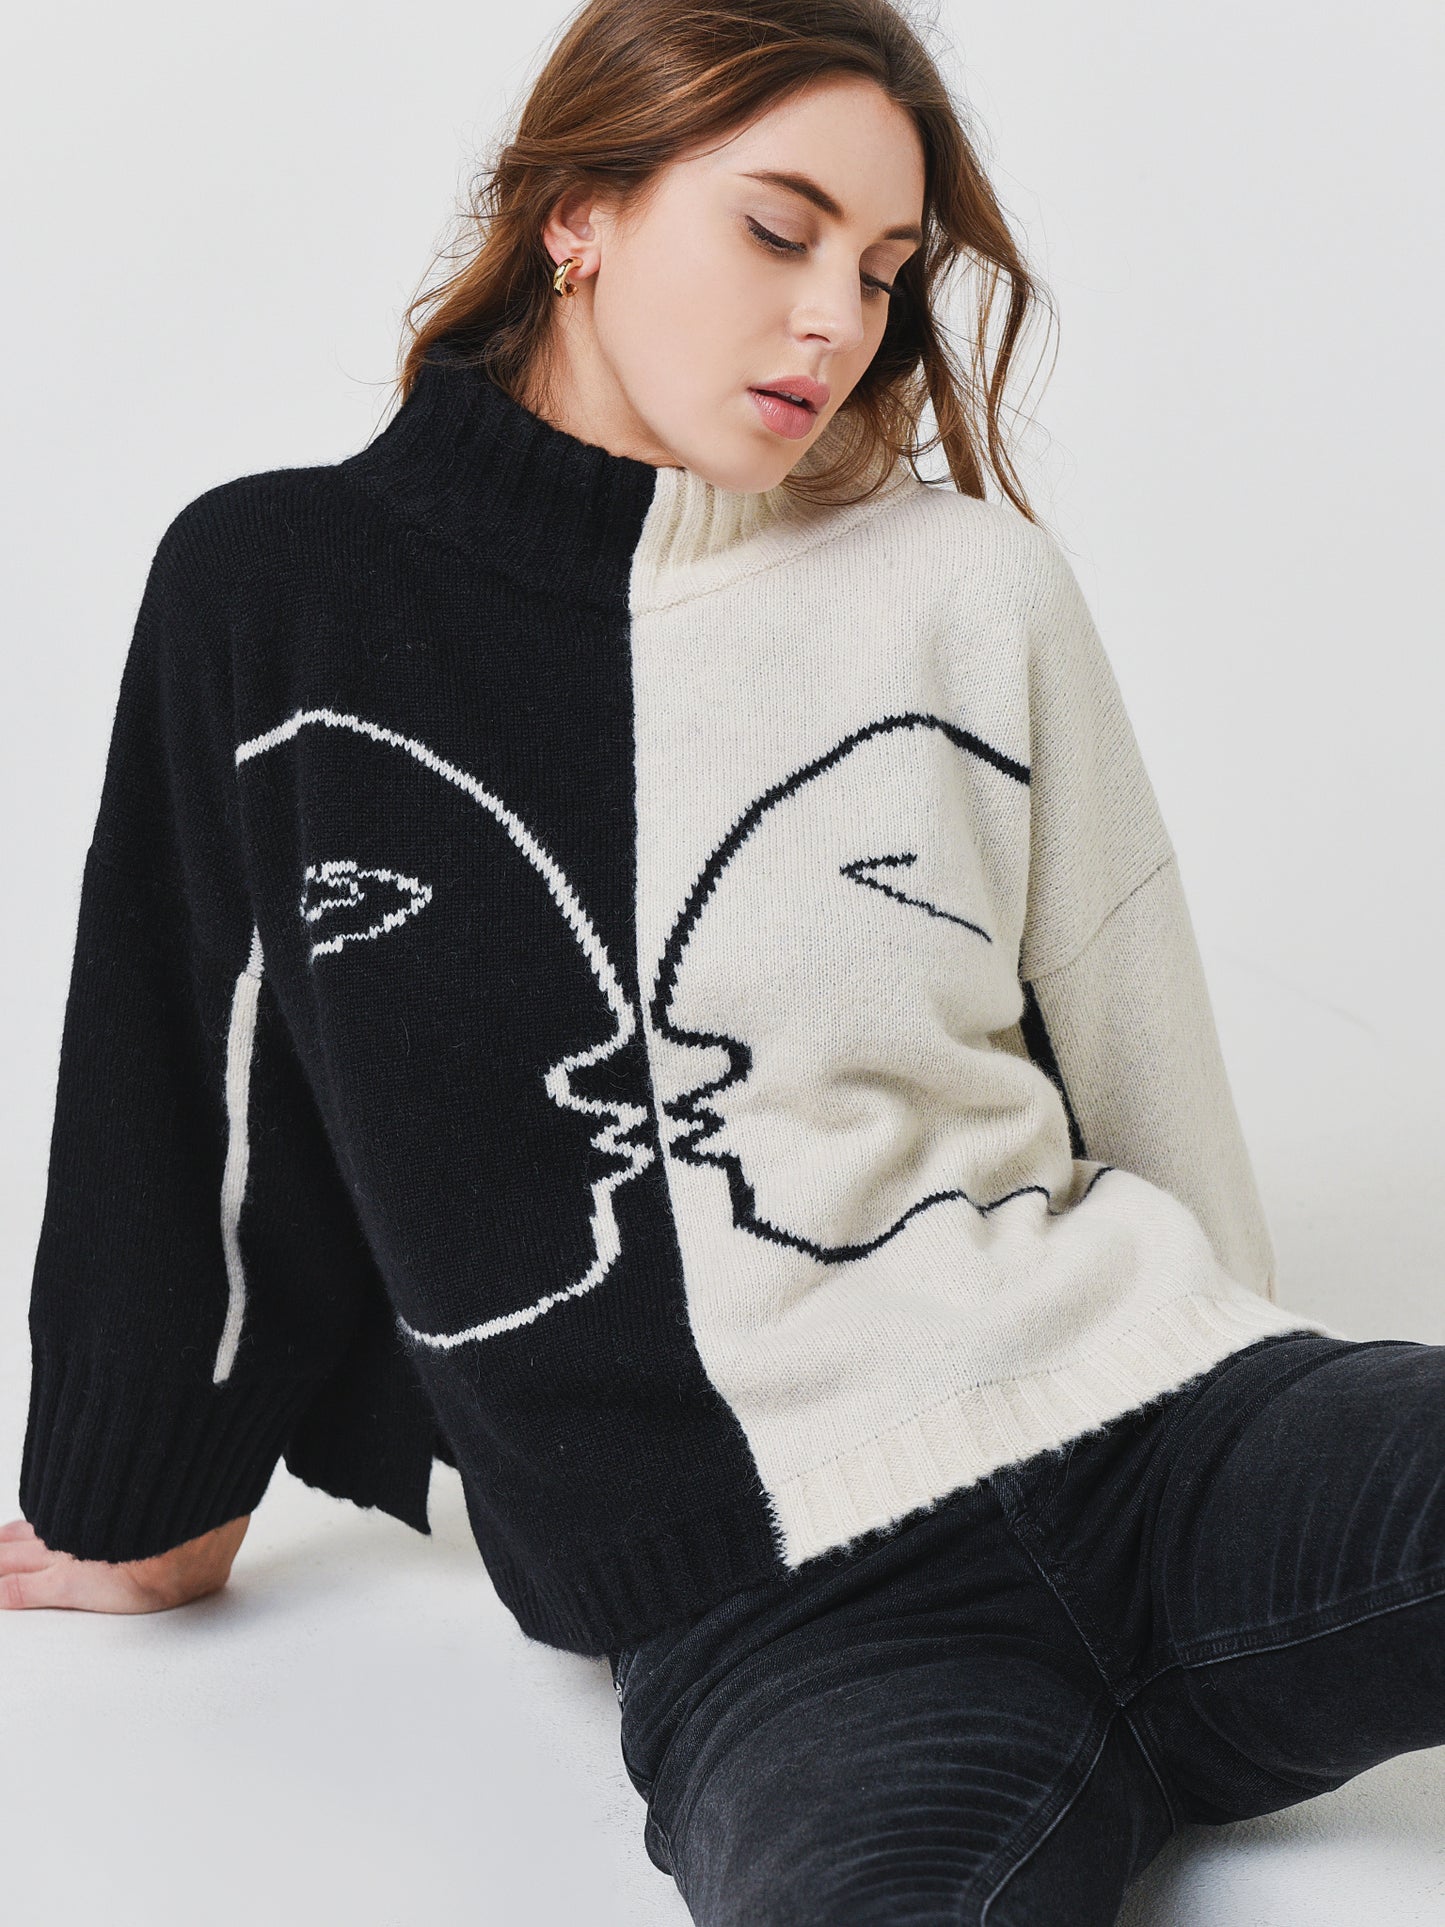 Eleven Six Women's Love Sweater